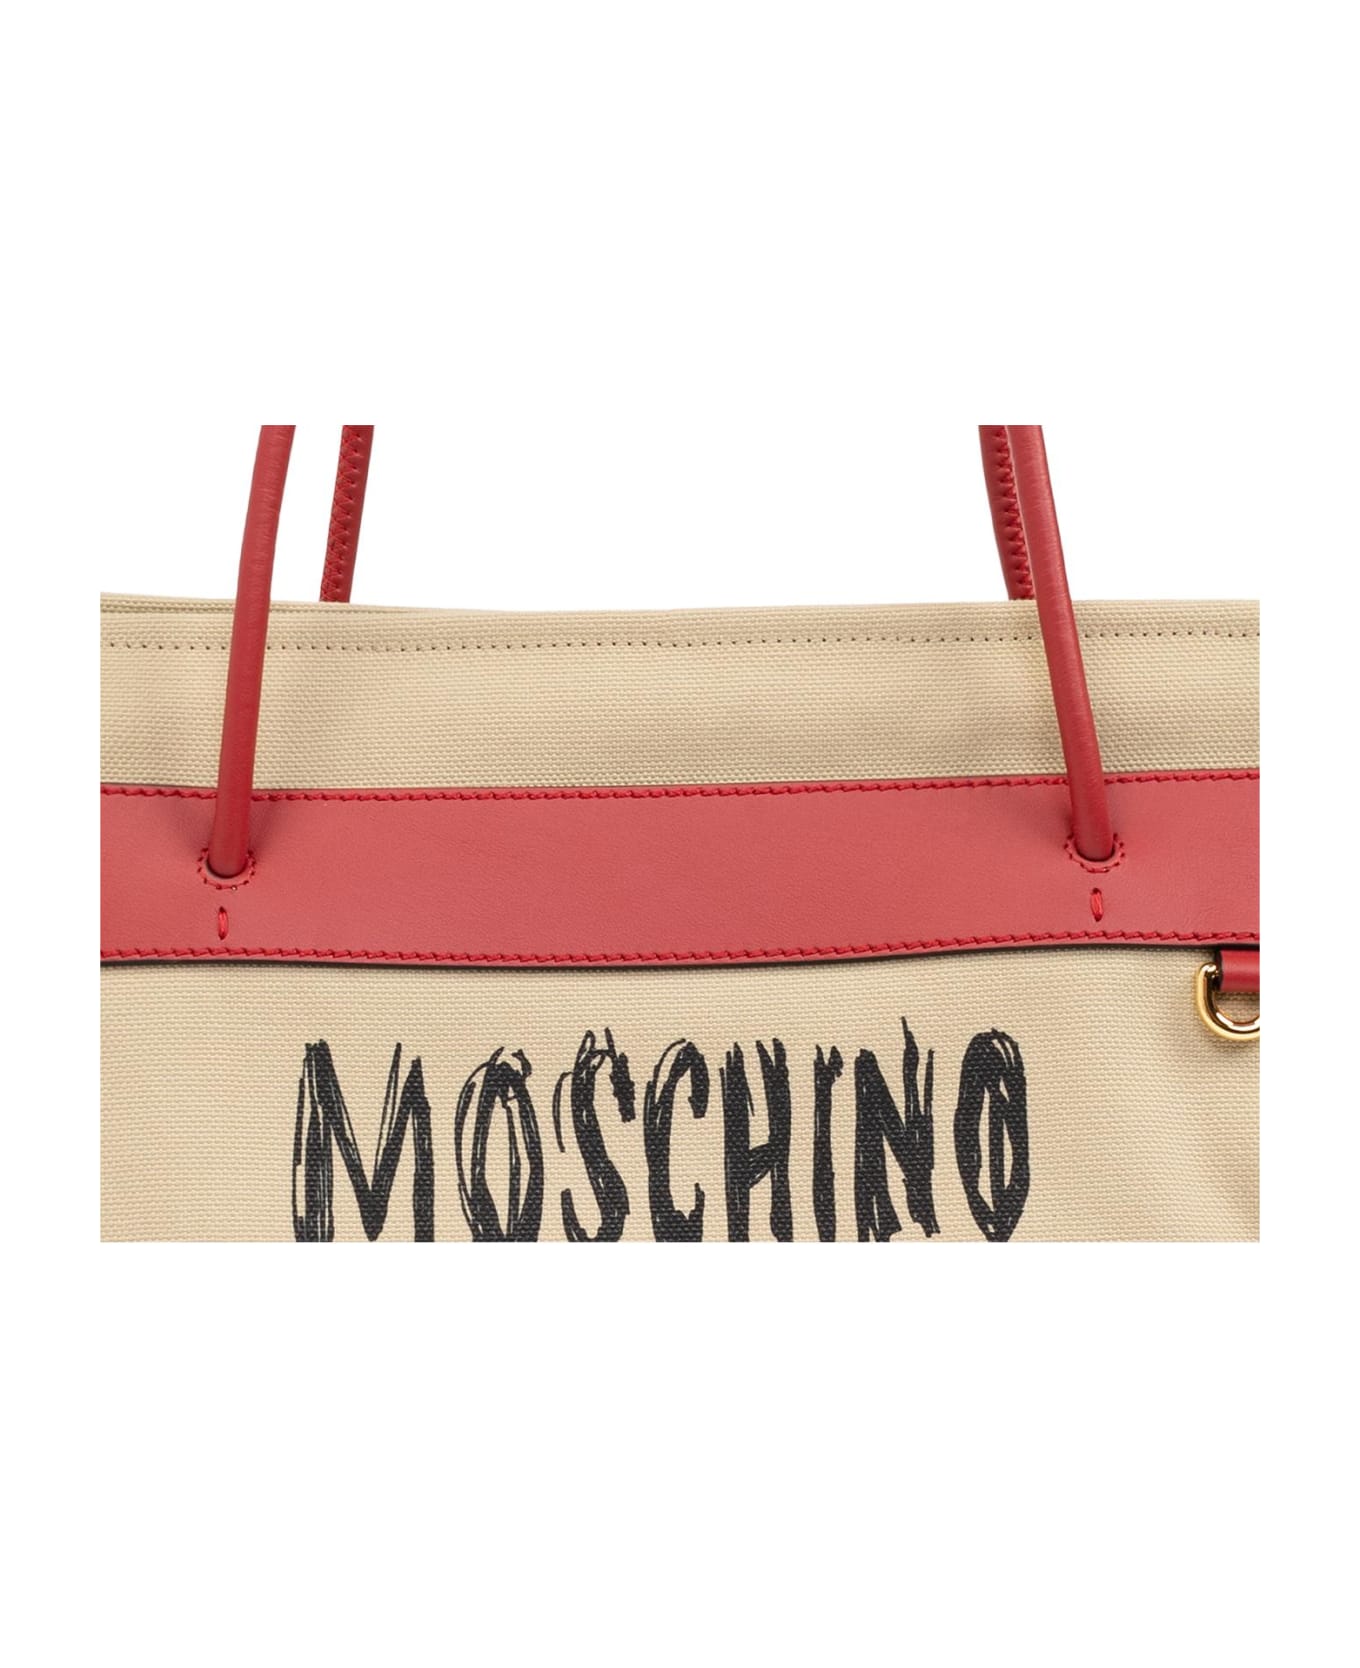 Moschino Shopper Bag - Beige トートバッグ